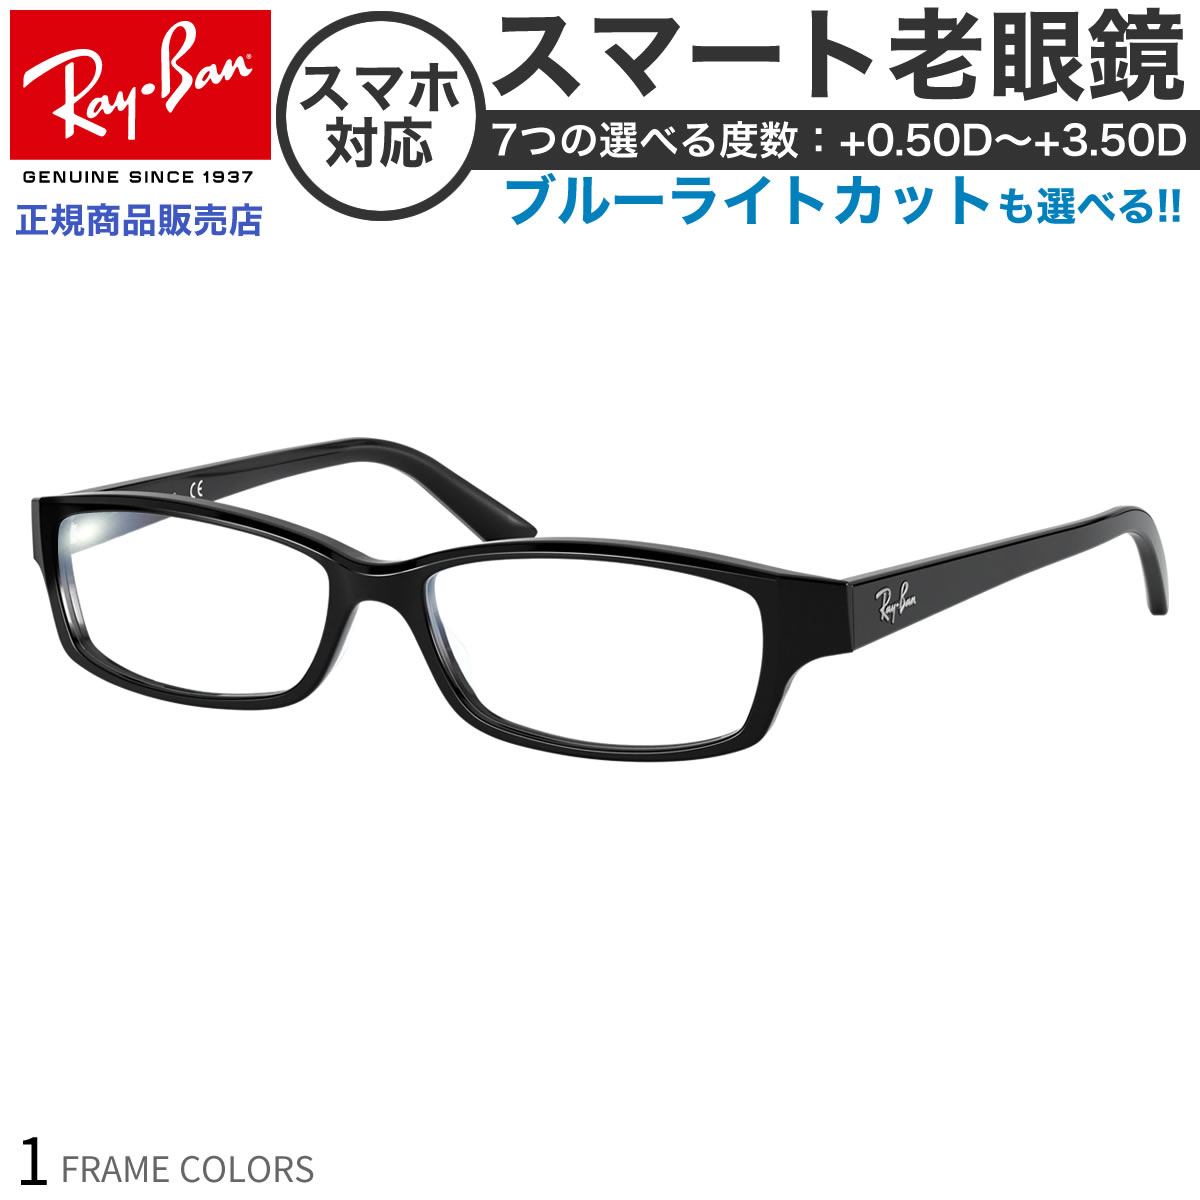 【楽天市場】レイバン RX5272 54 サイズ スマート老眼鏡 ブルーライトカット PCメガネ UVカット 紫外線カット Ray-Ban あす楽対応  スマホ老眼 リーディンググラス シニアグラス UV400 [OS] : メガネ・サングラスのThat's